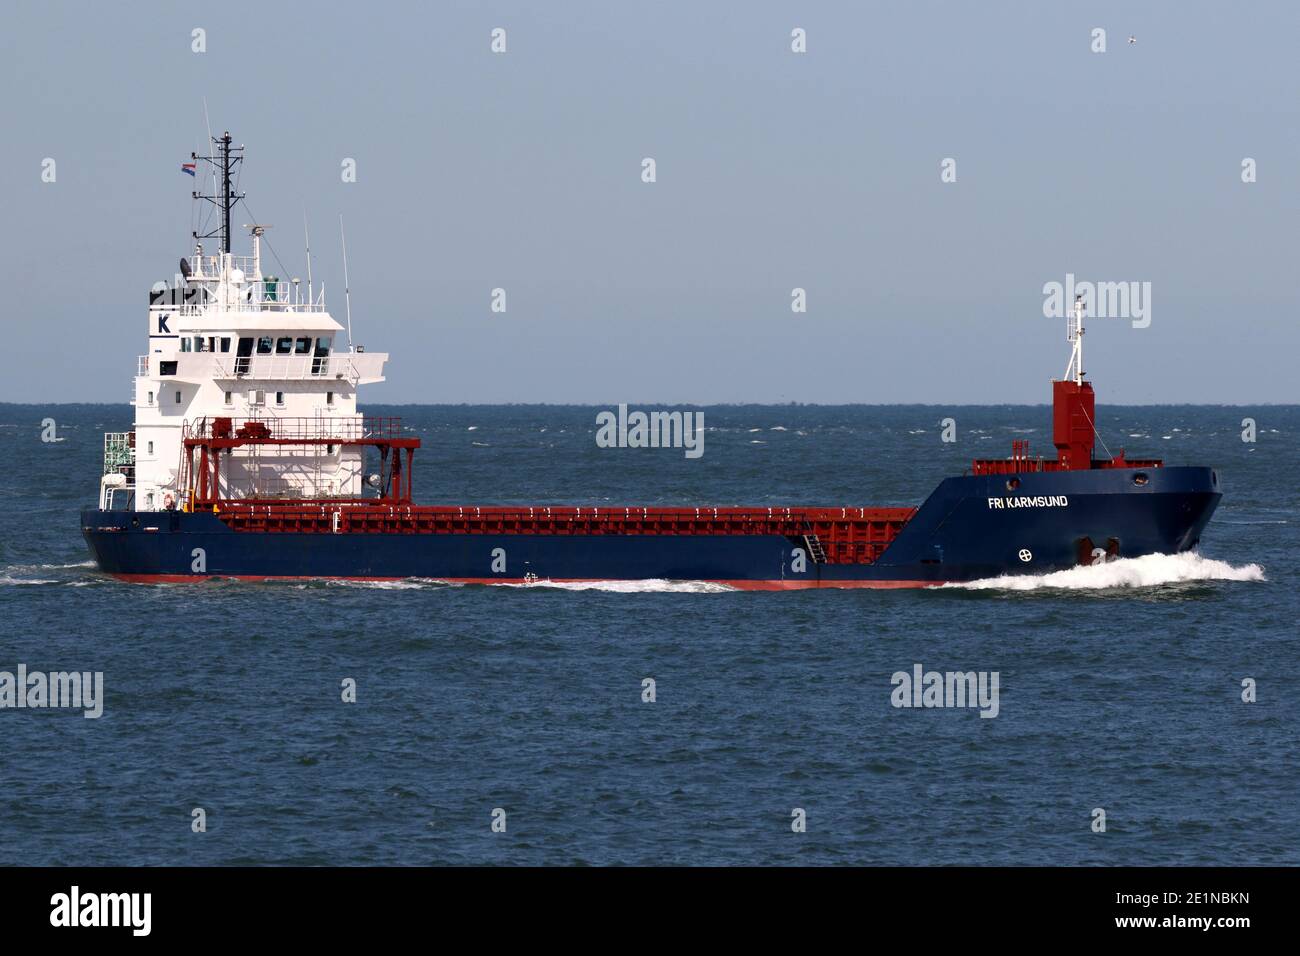 Das Frachtschiff Fri Karmsund wird am 18. September 2020 in Rotterdam ankommen. Stockfoto